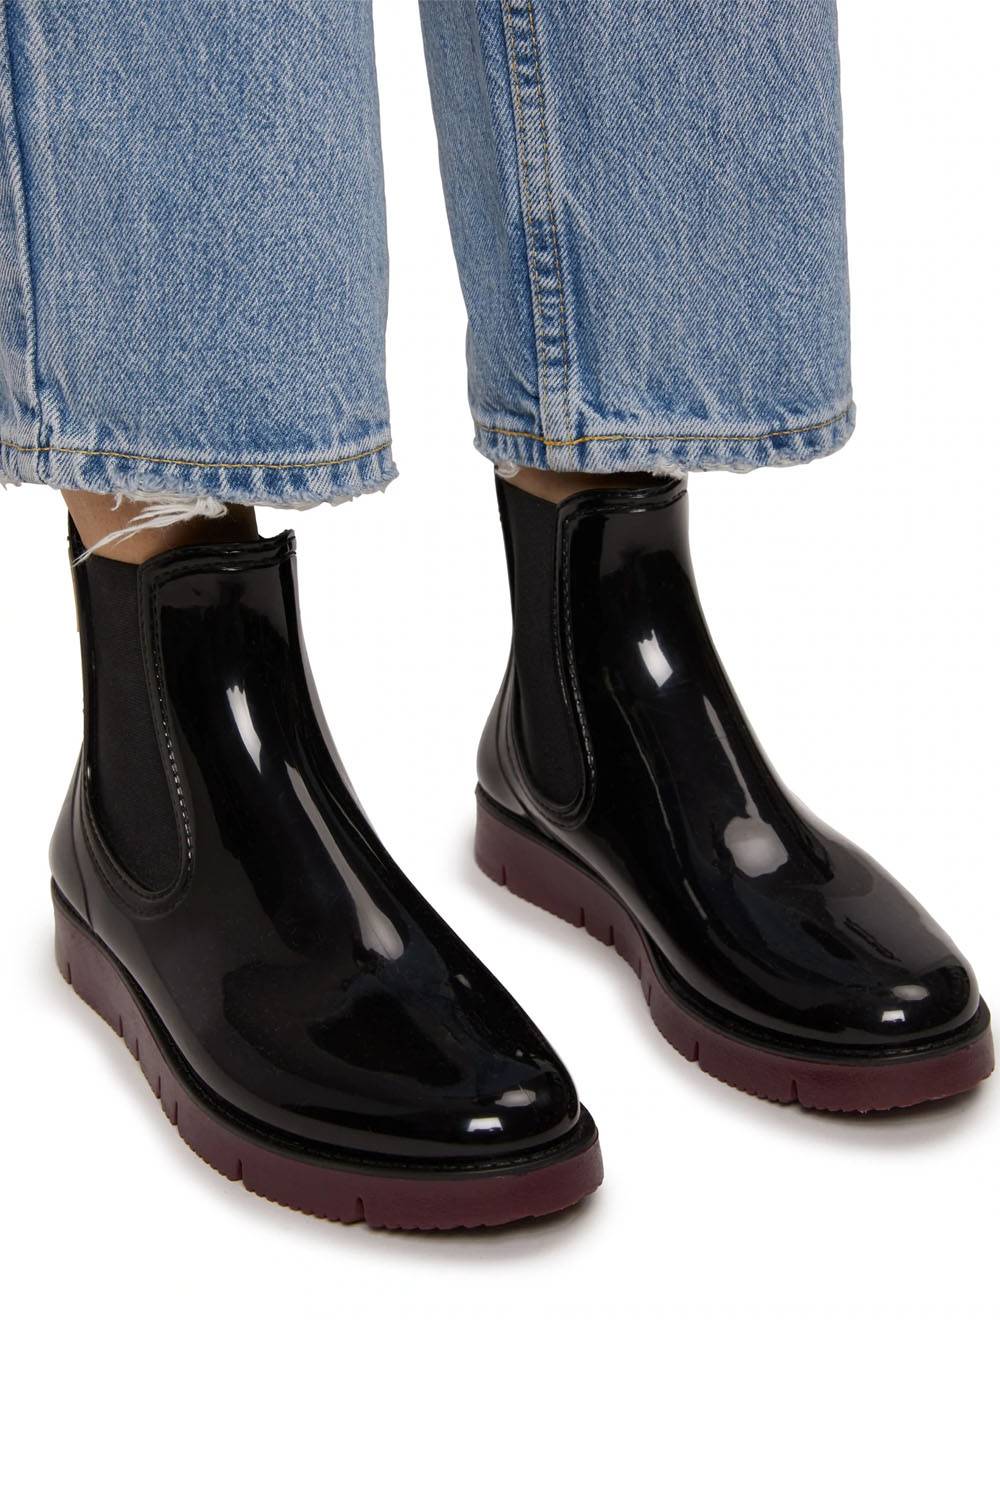 matt nat ethical rain boots